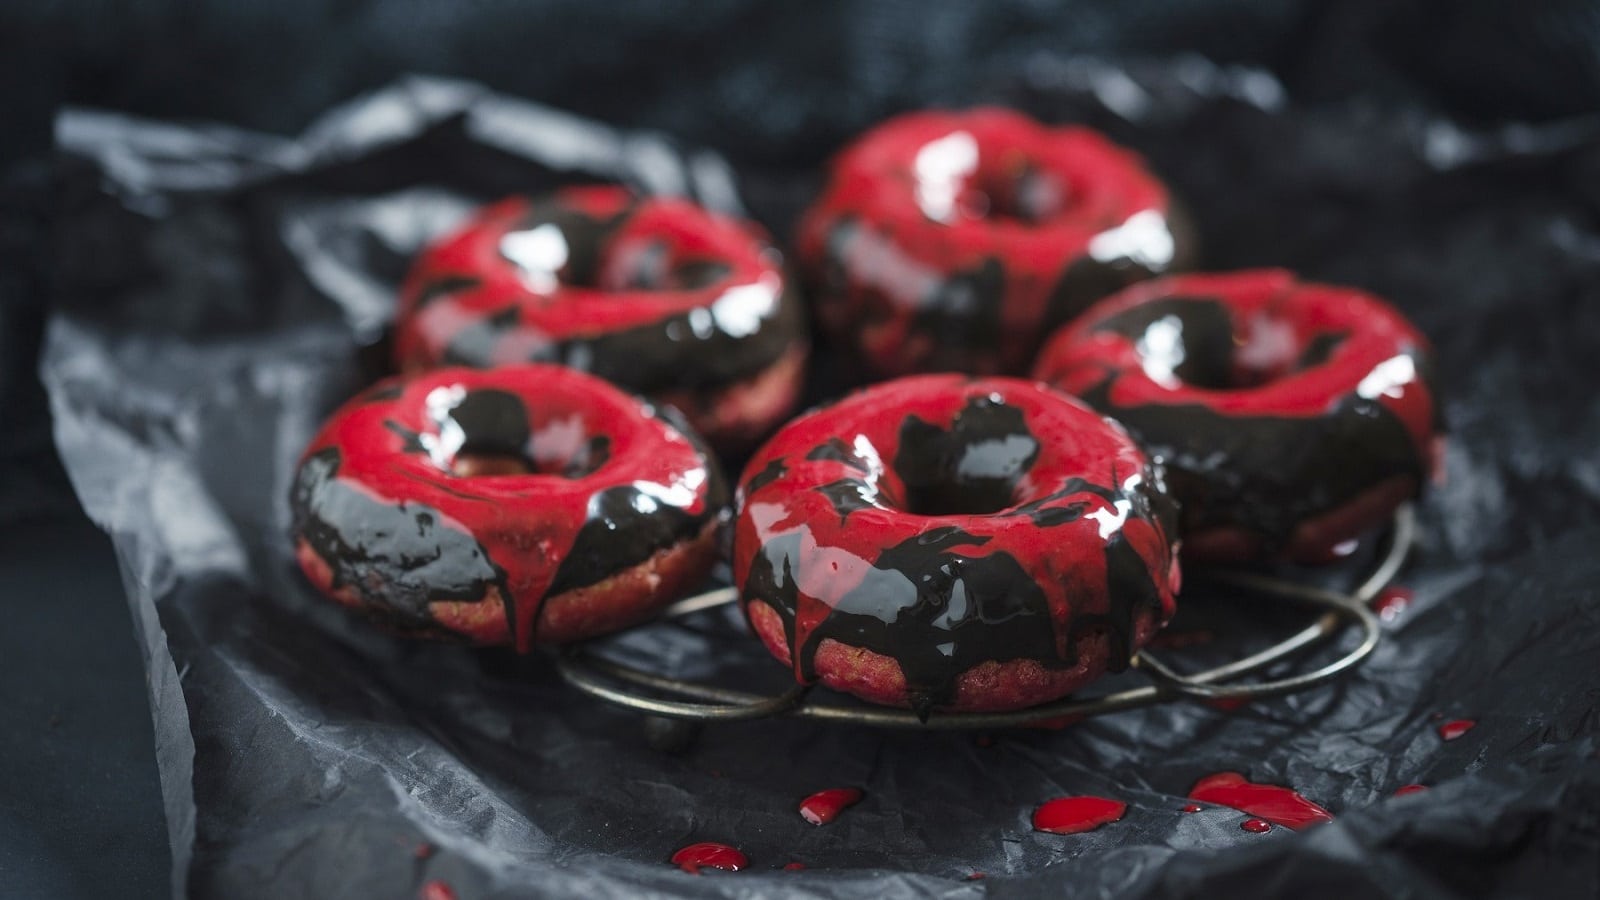 Auf einem schwarzen Teller liegen Rote-Bete-Donuts mit Schokoladenglasur. Sie sind mit roter und schwarzer Glasur überzogen.